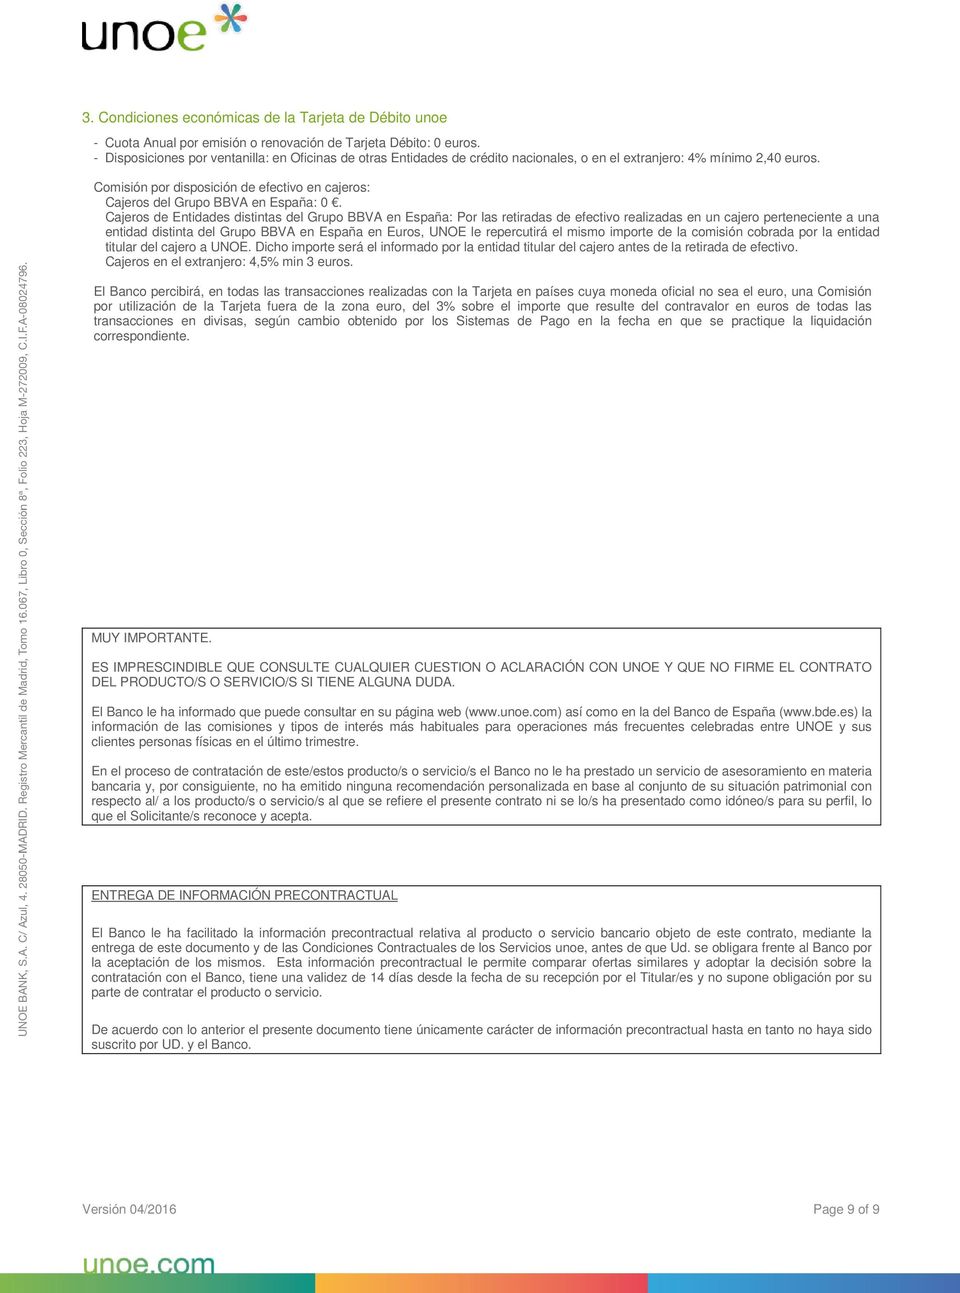 Comisión por disposición de efectivo en cajeros: Cajeros del Grupo BBVA en España: 0.